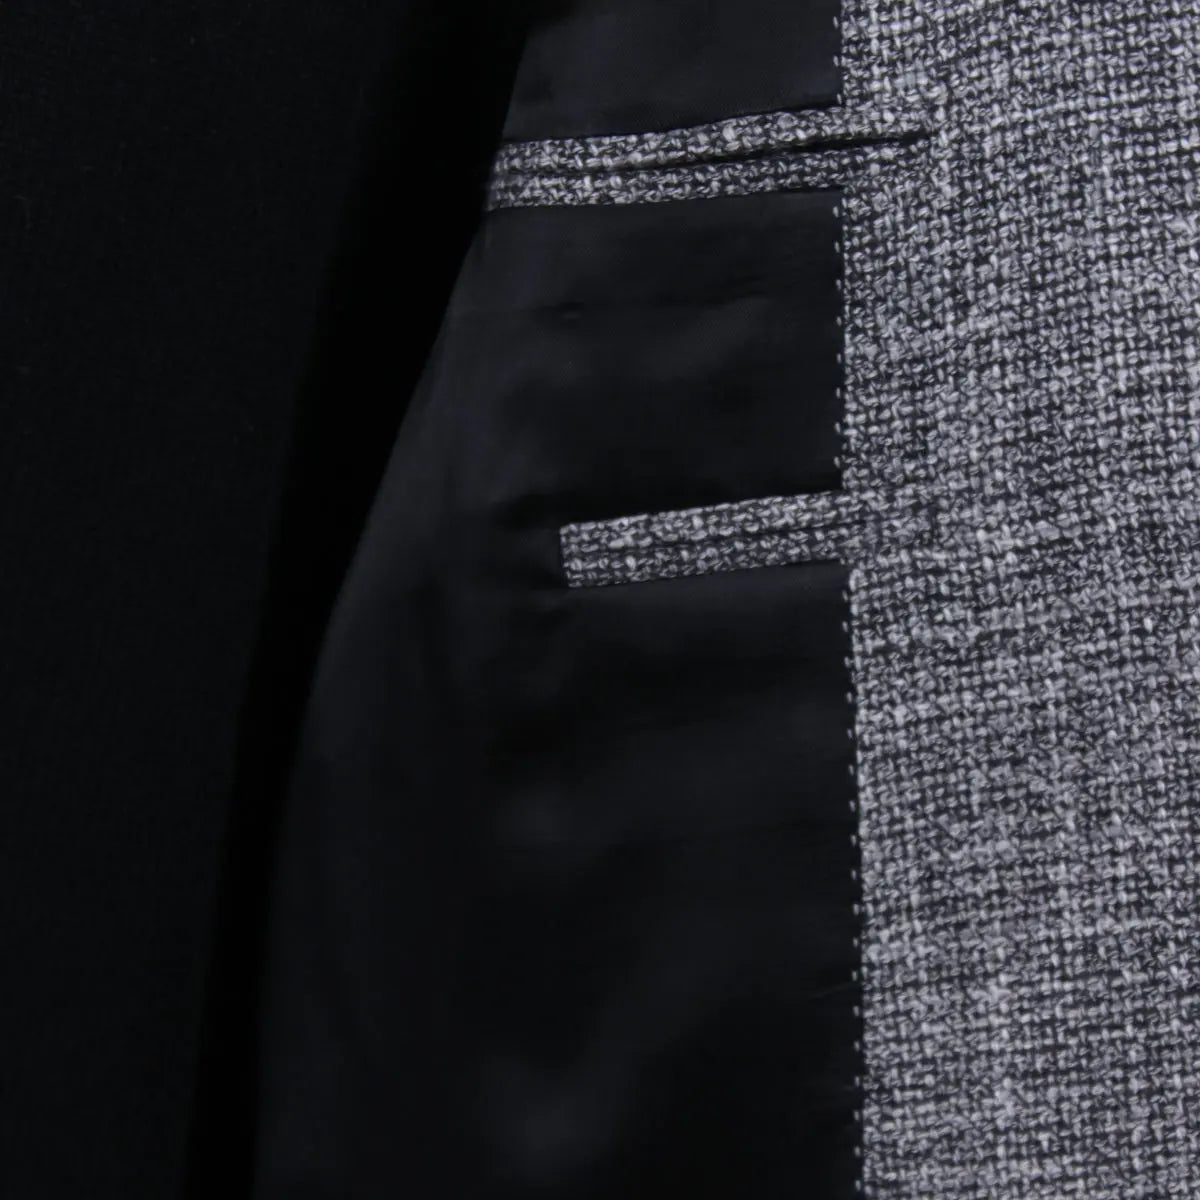 Charcoal Wool, Linen, & Sisal Weave Jacket  Robert Old   